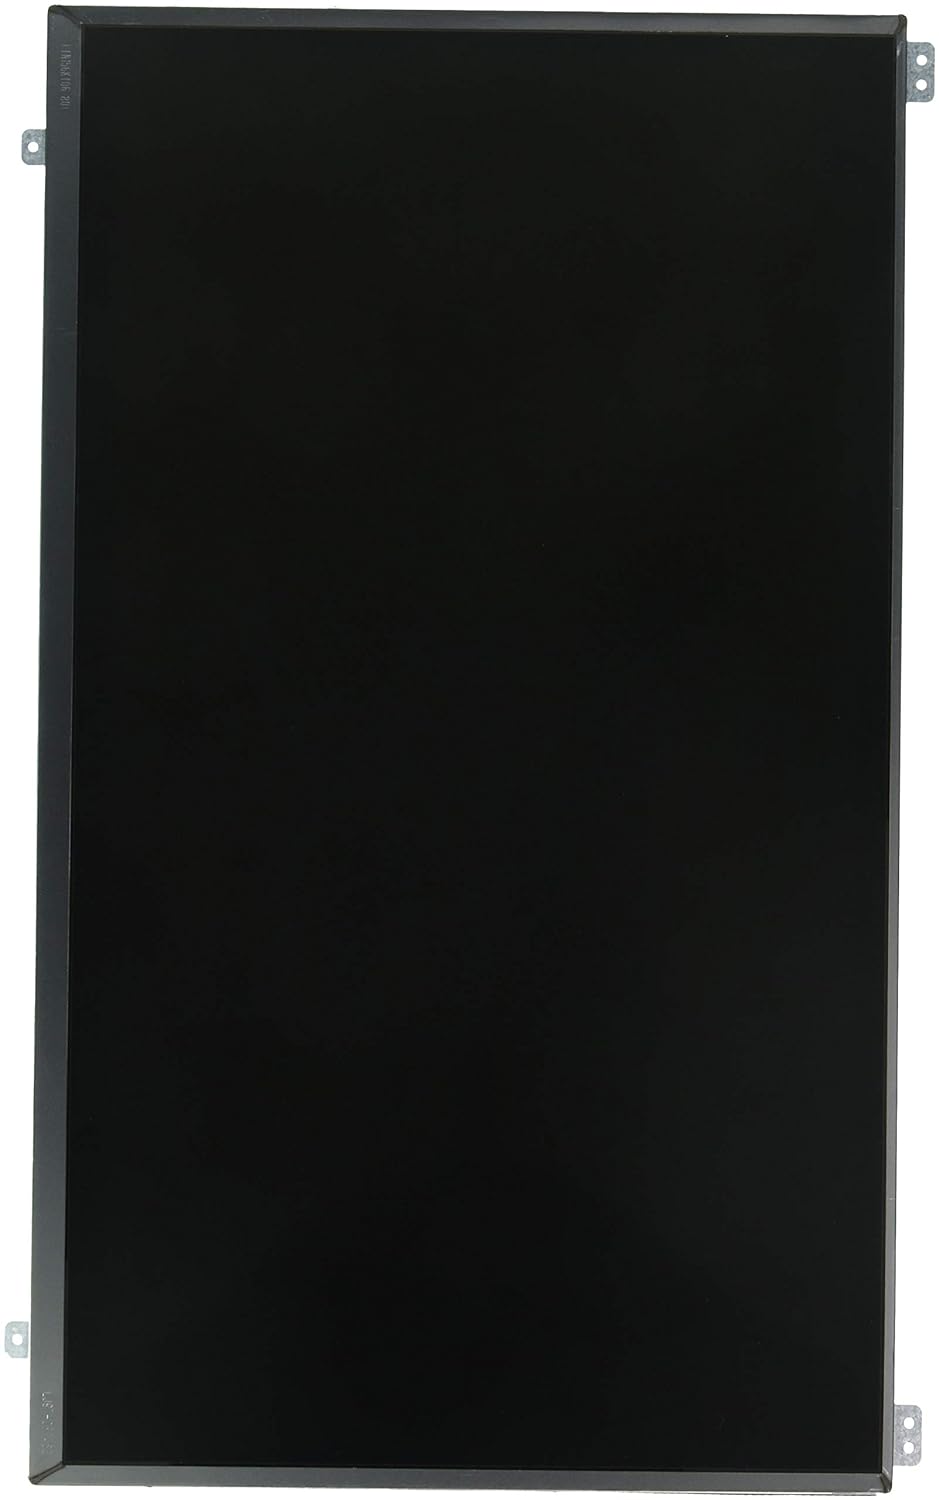 BA59-03144A LCD Panel-156HD - Samsung Parts USA